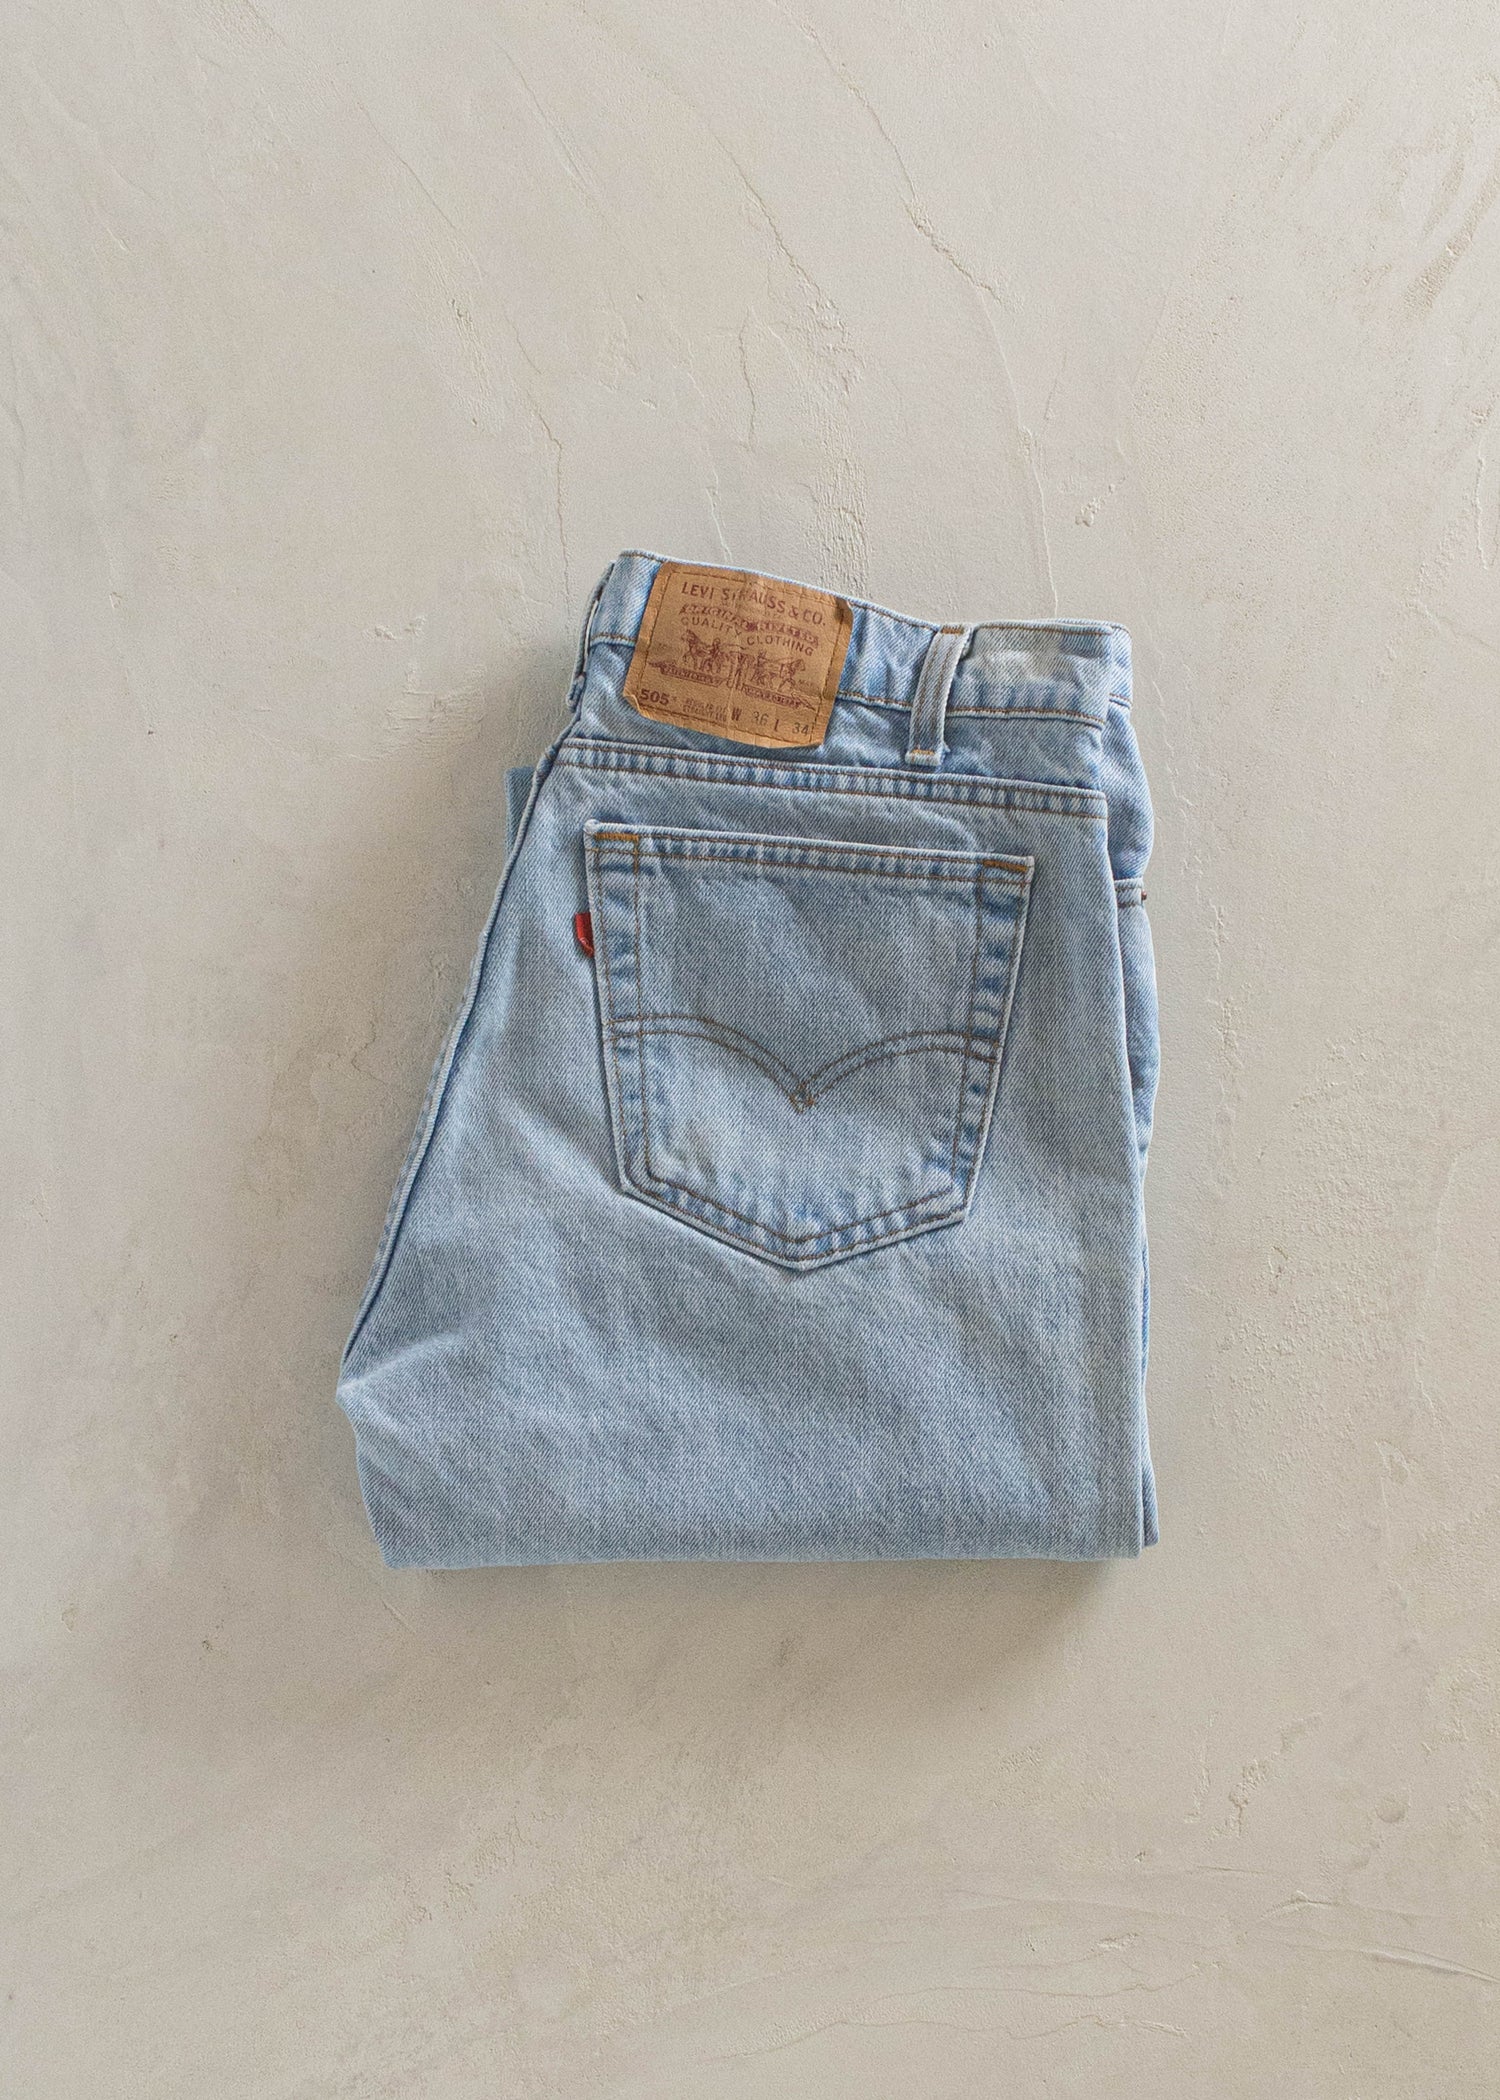 1980s Levi's 505 Lightwash Jeans Size Women's 30 Men's 32 – Palmo Goods